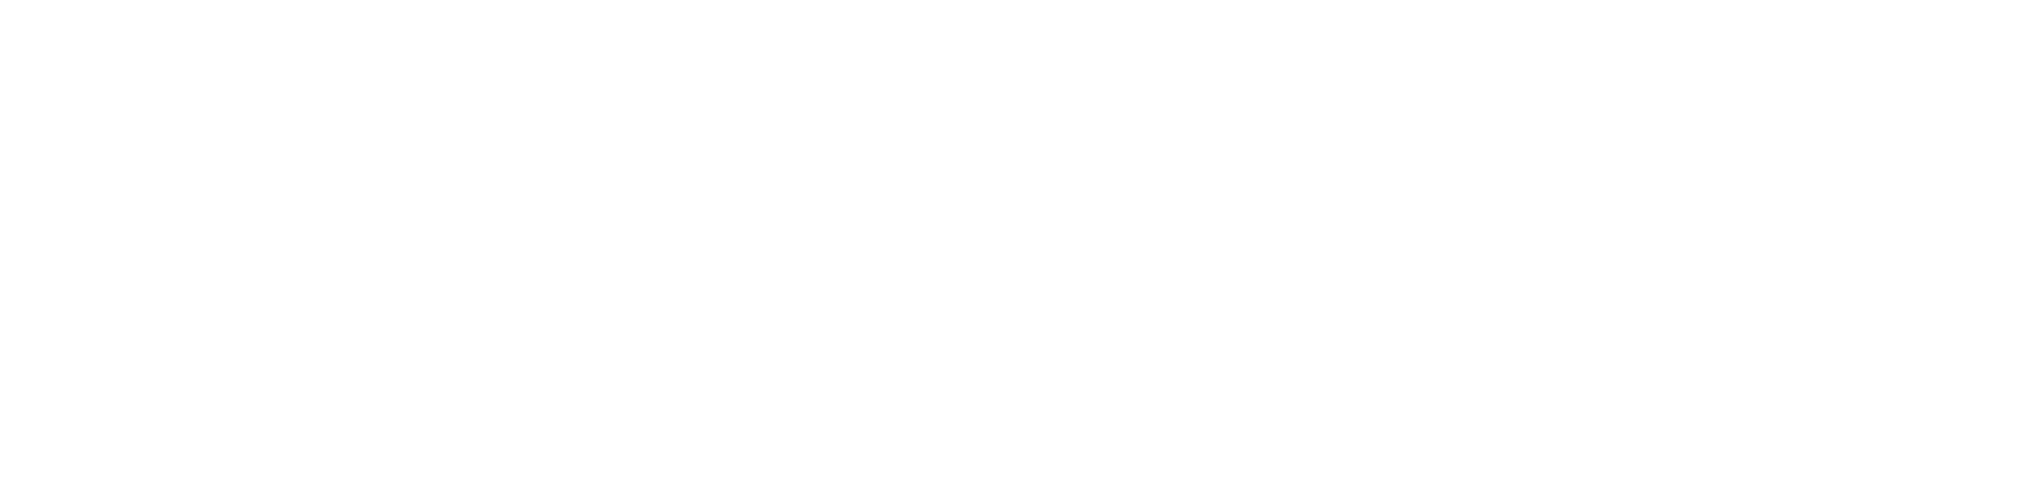 Logomarca Persiplus Branca